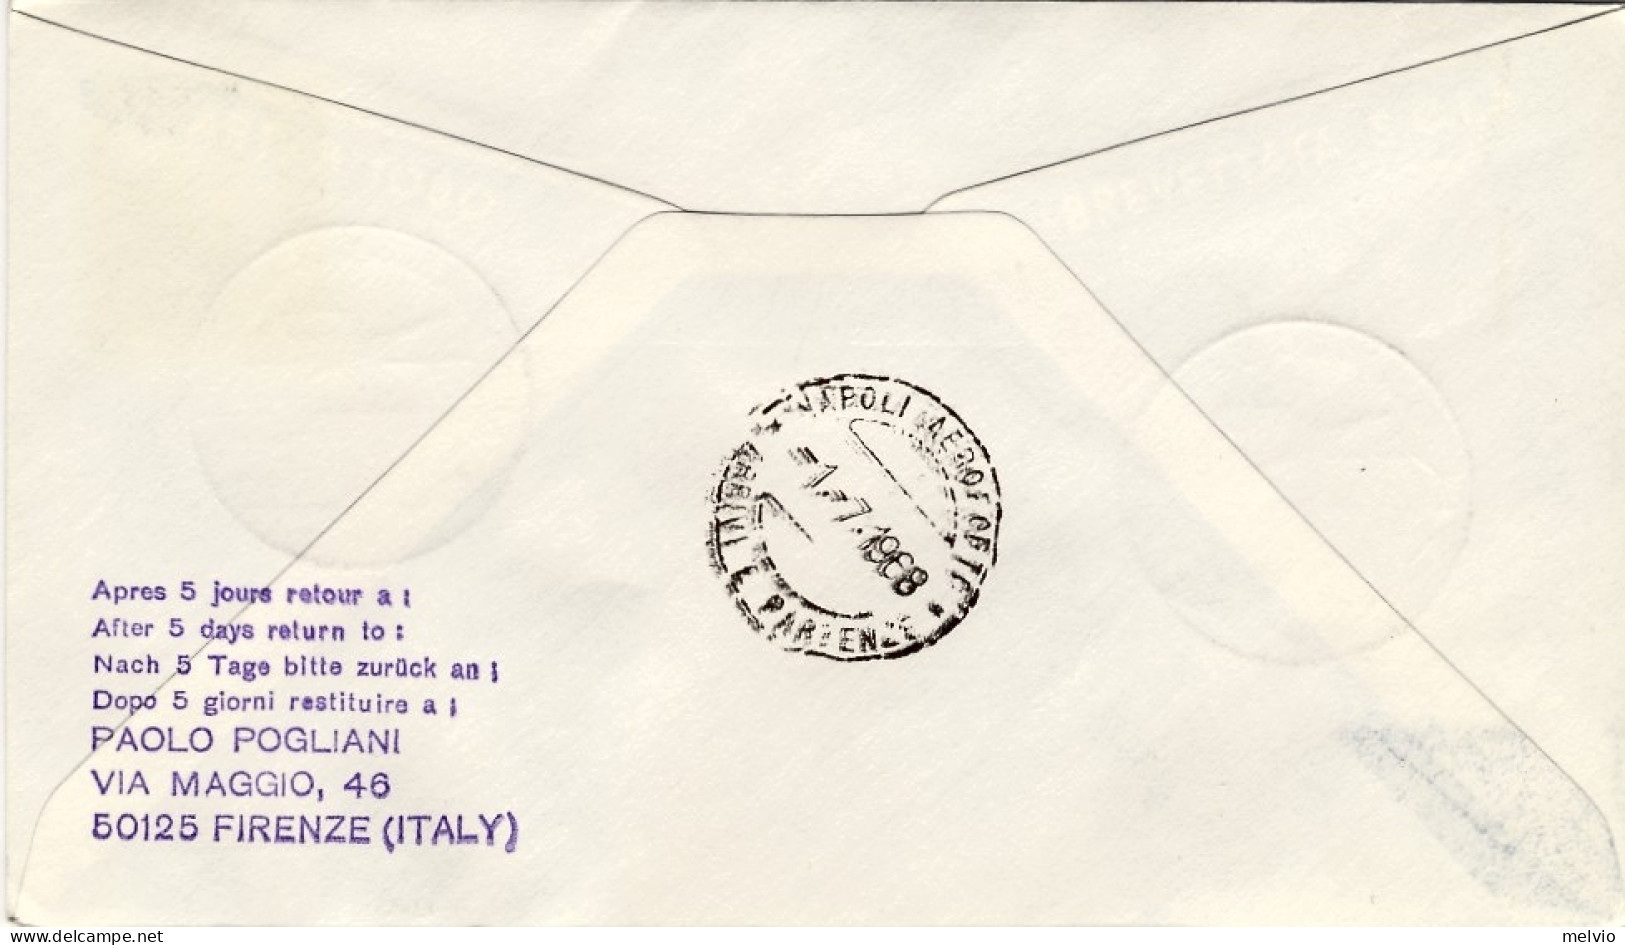 1968-Germania Berlino I^volo Lufthansa Francoforte-Napoli Del 1 Luglio,posta Da  - Briefe U. Dokumente